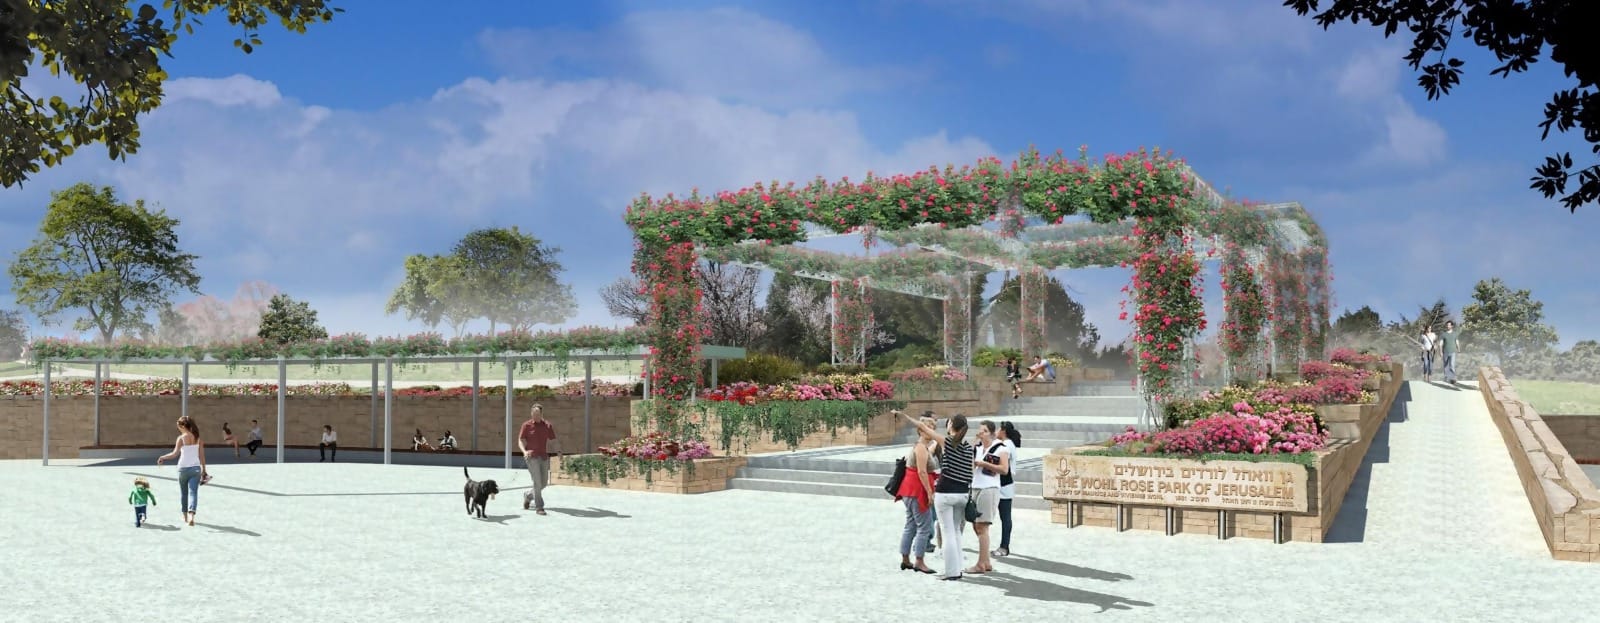 גן הוורדים יהפוך, בעוד שנה וחצי, לאתר תיירות ושוטטות עירוני בהשקעה של כ-60 מיליון שקלים